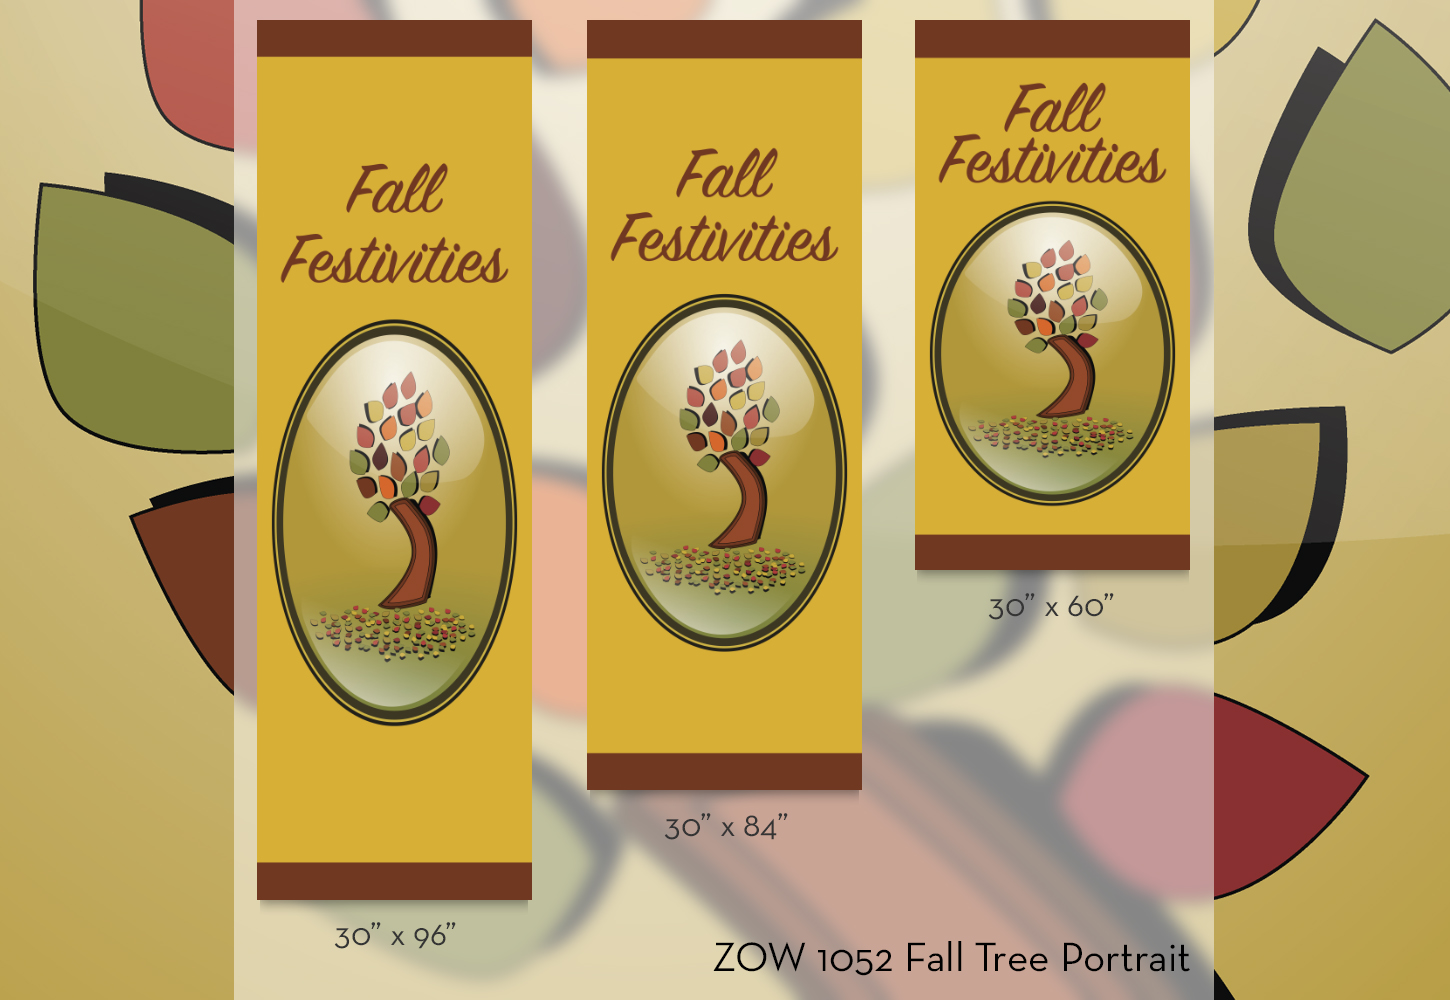 ZOW 1052 Fall Tree Portrait